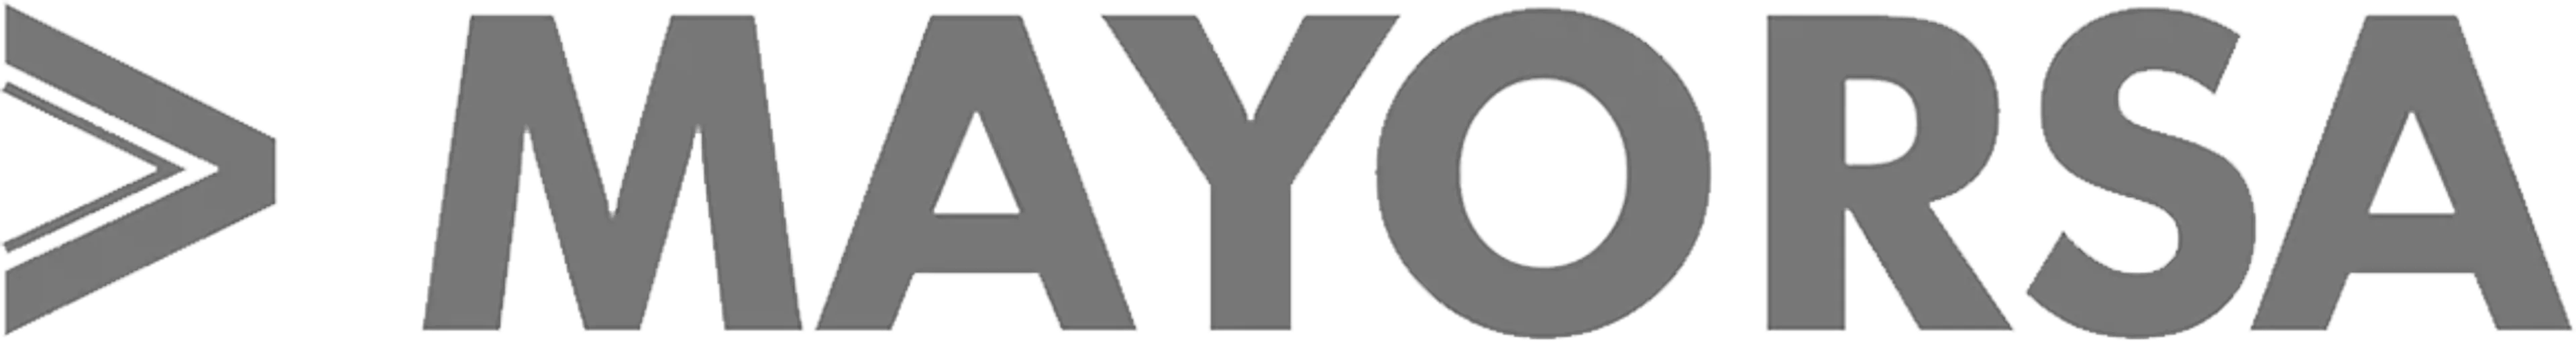 MAYORSA logo